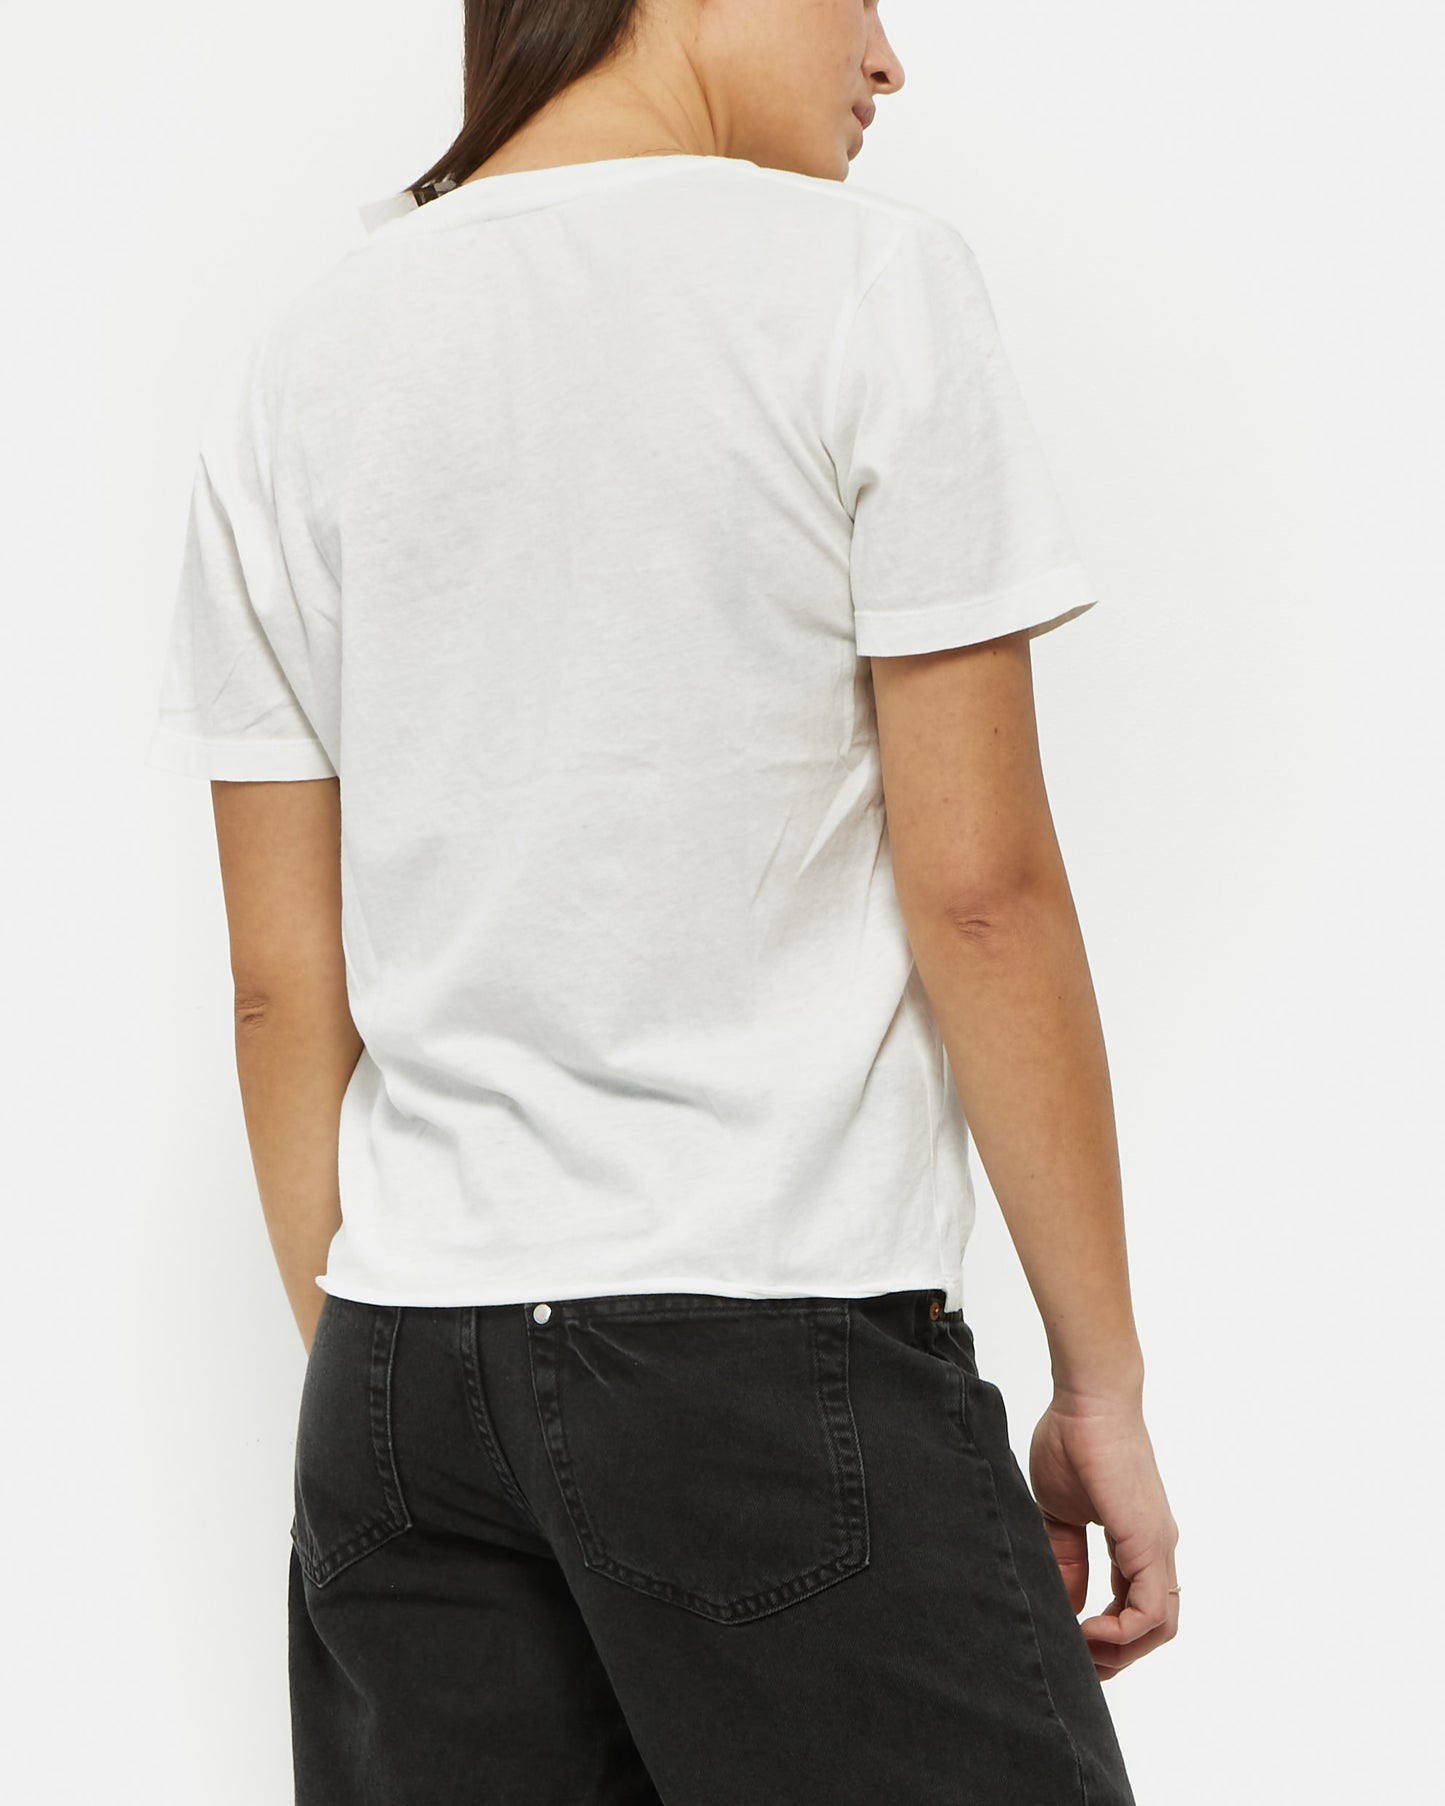 Saint Laurent T-shirt Graphique Cactus en Coton Léger Blanc - S